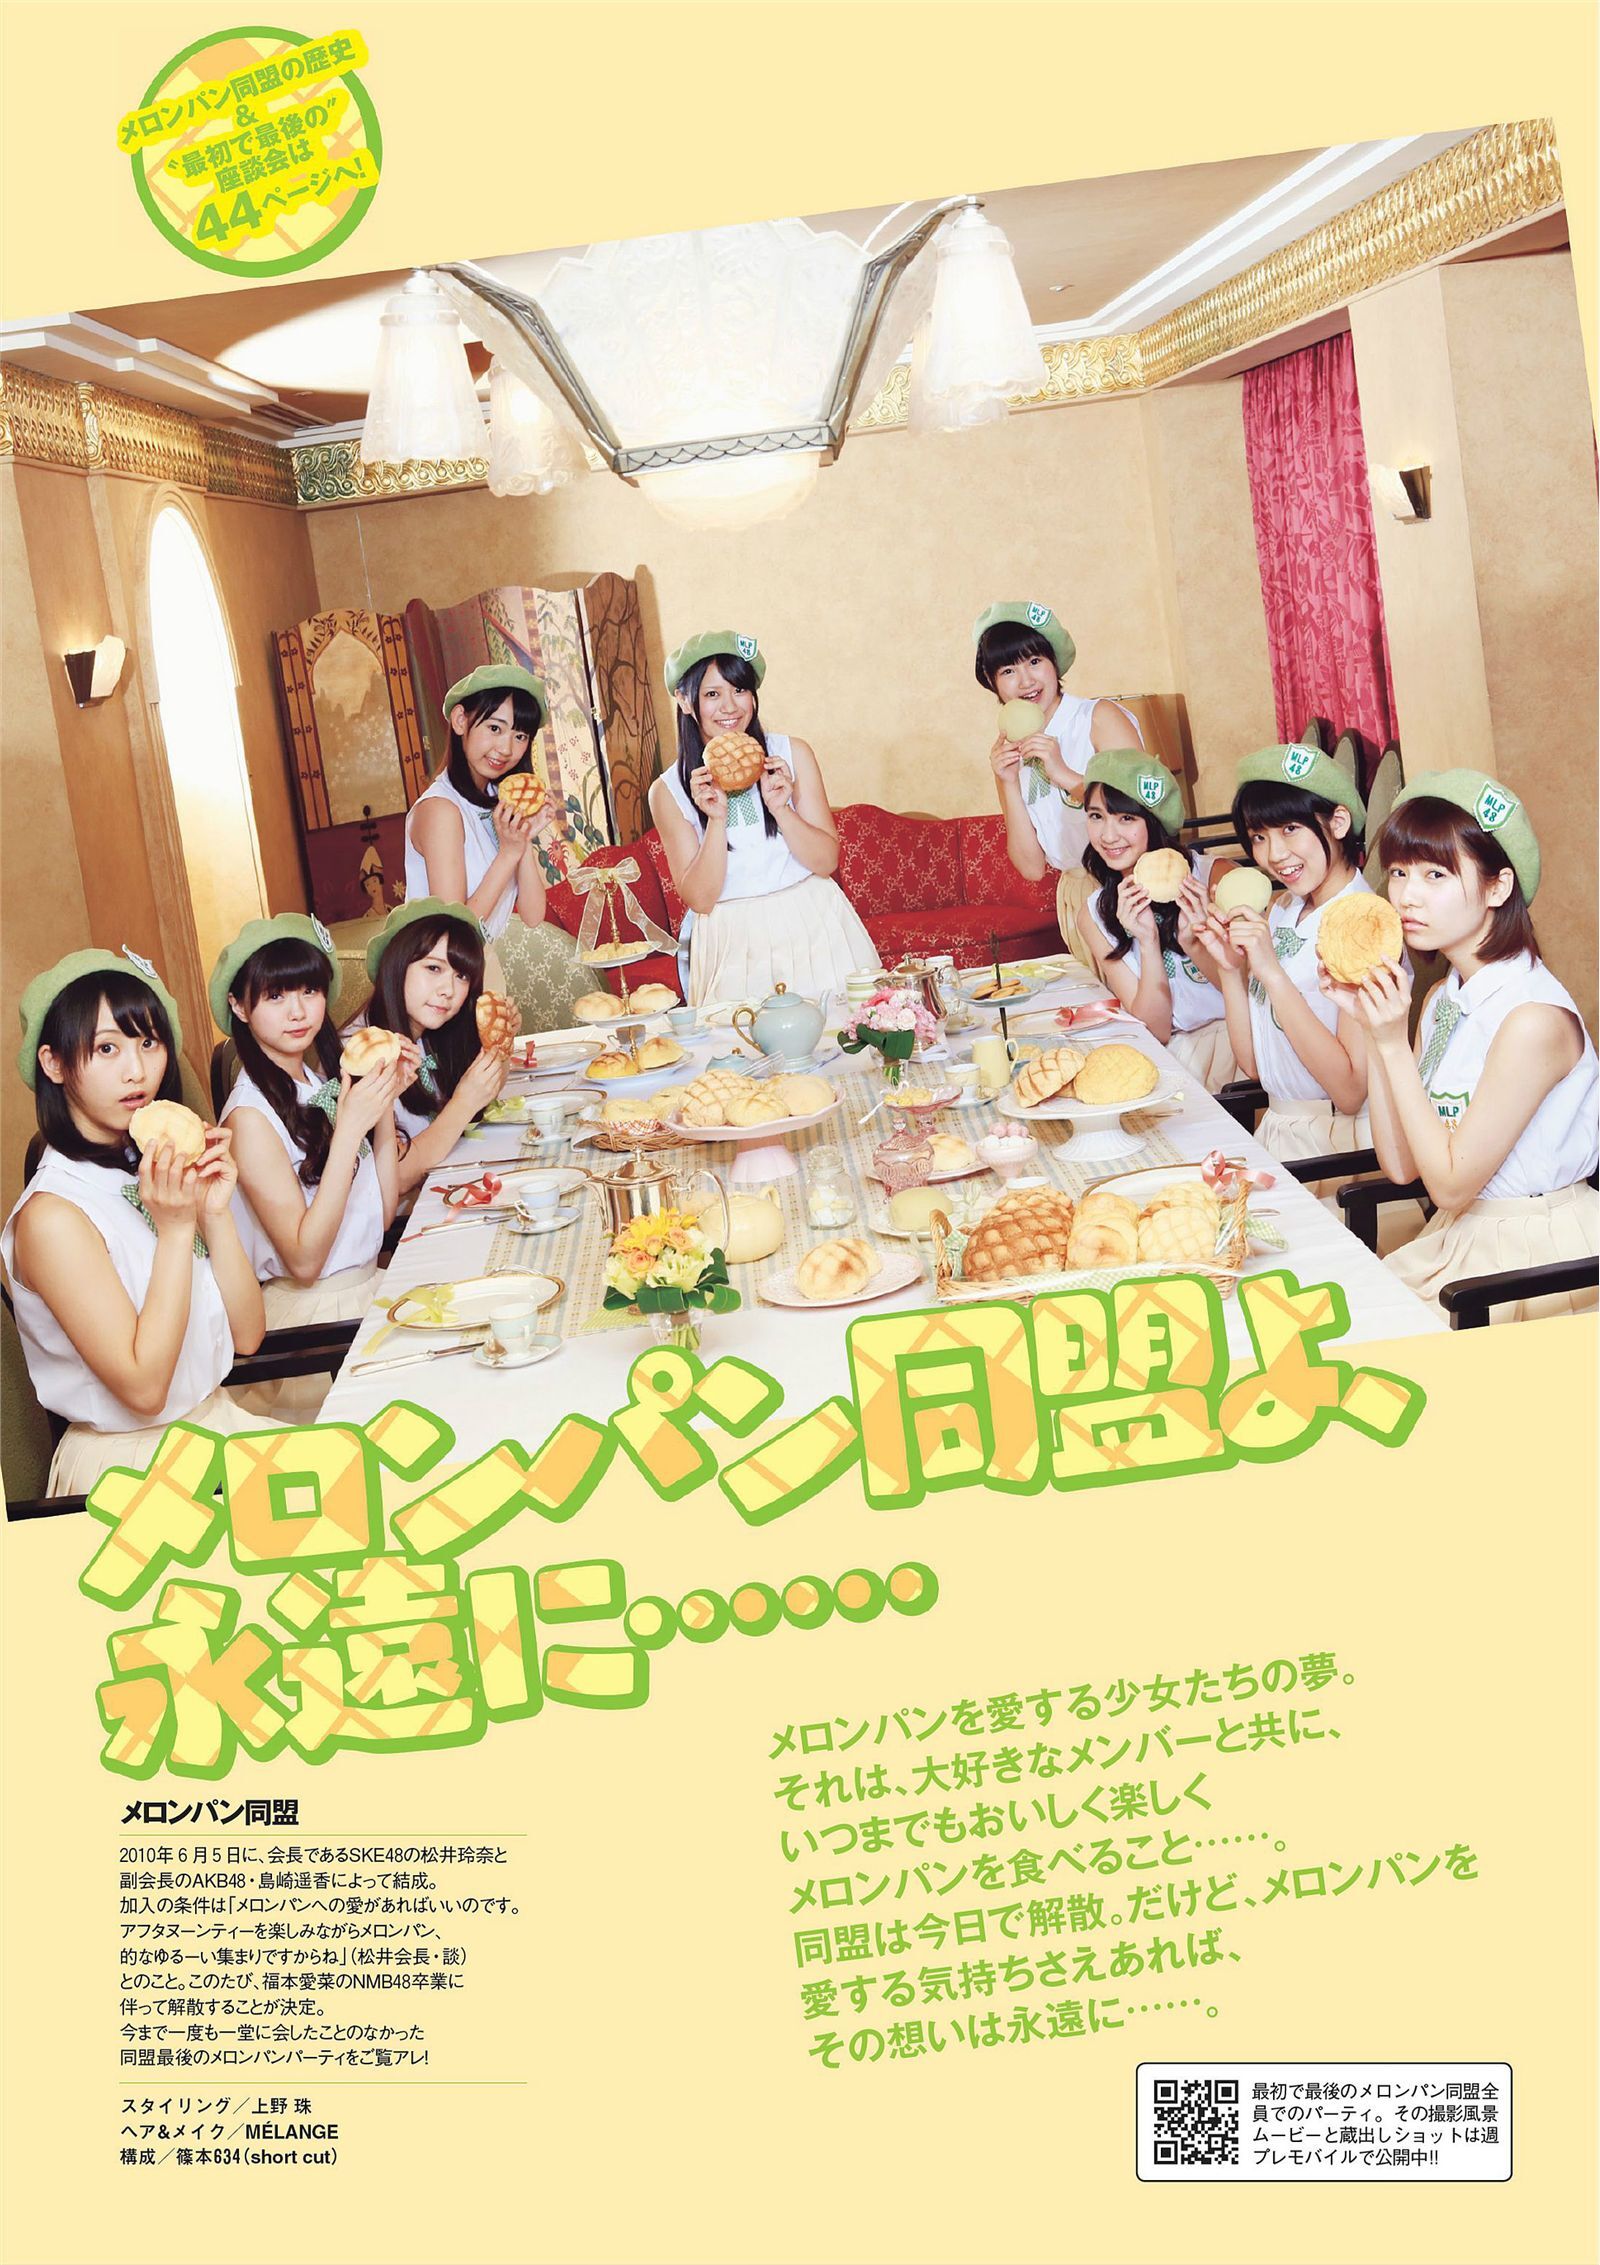 [Weekly Playboy] 2013 No.28 AKB48